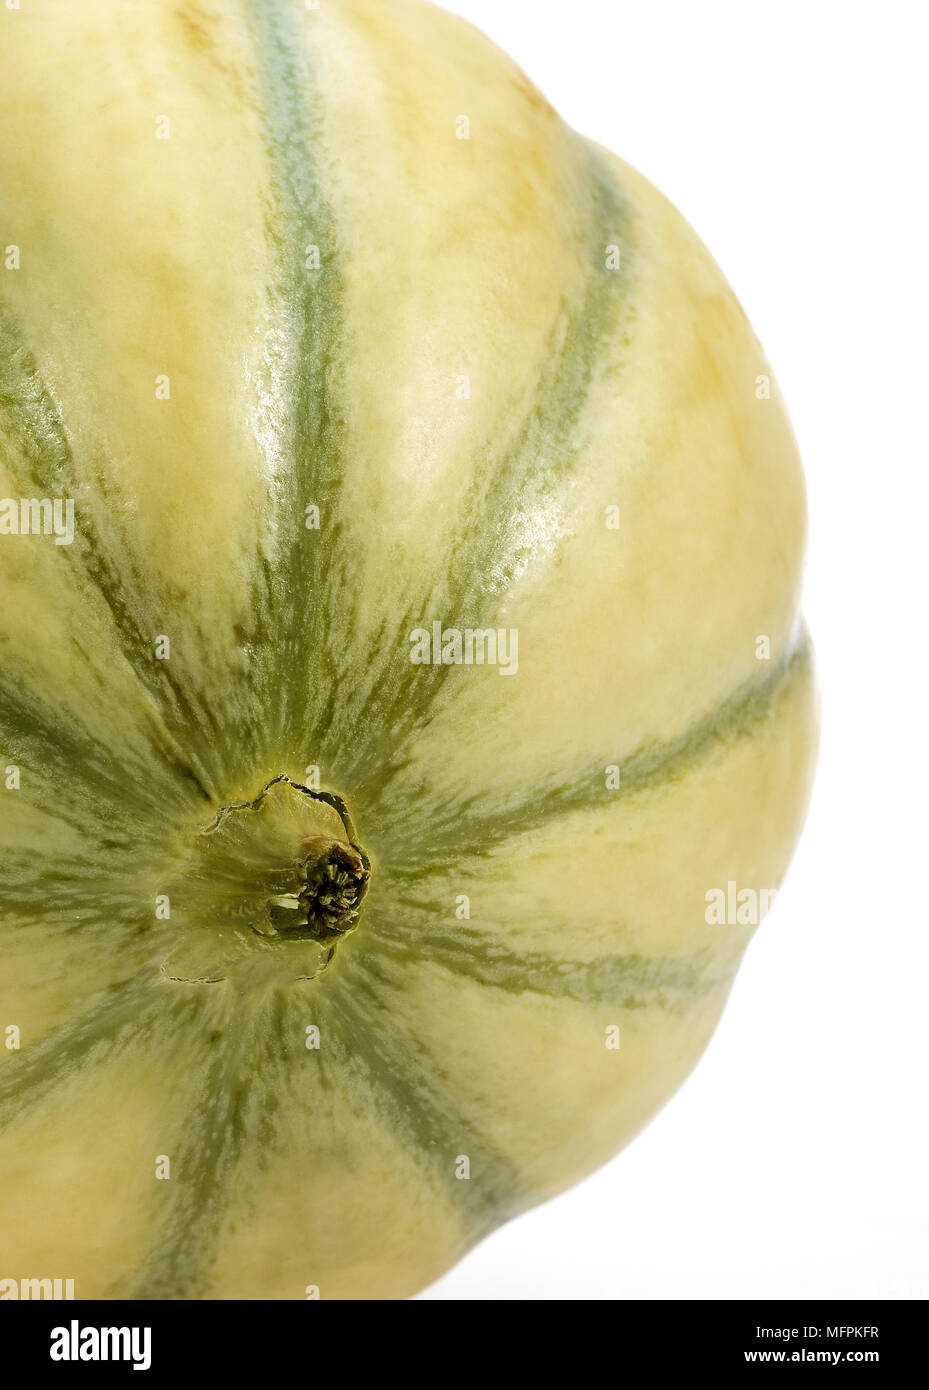 Cavaillon Melone, Cucumis Melo, Obst auf weißem Hintergrund Stockfoto